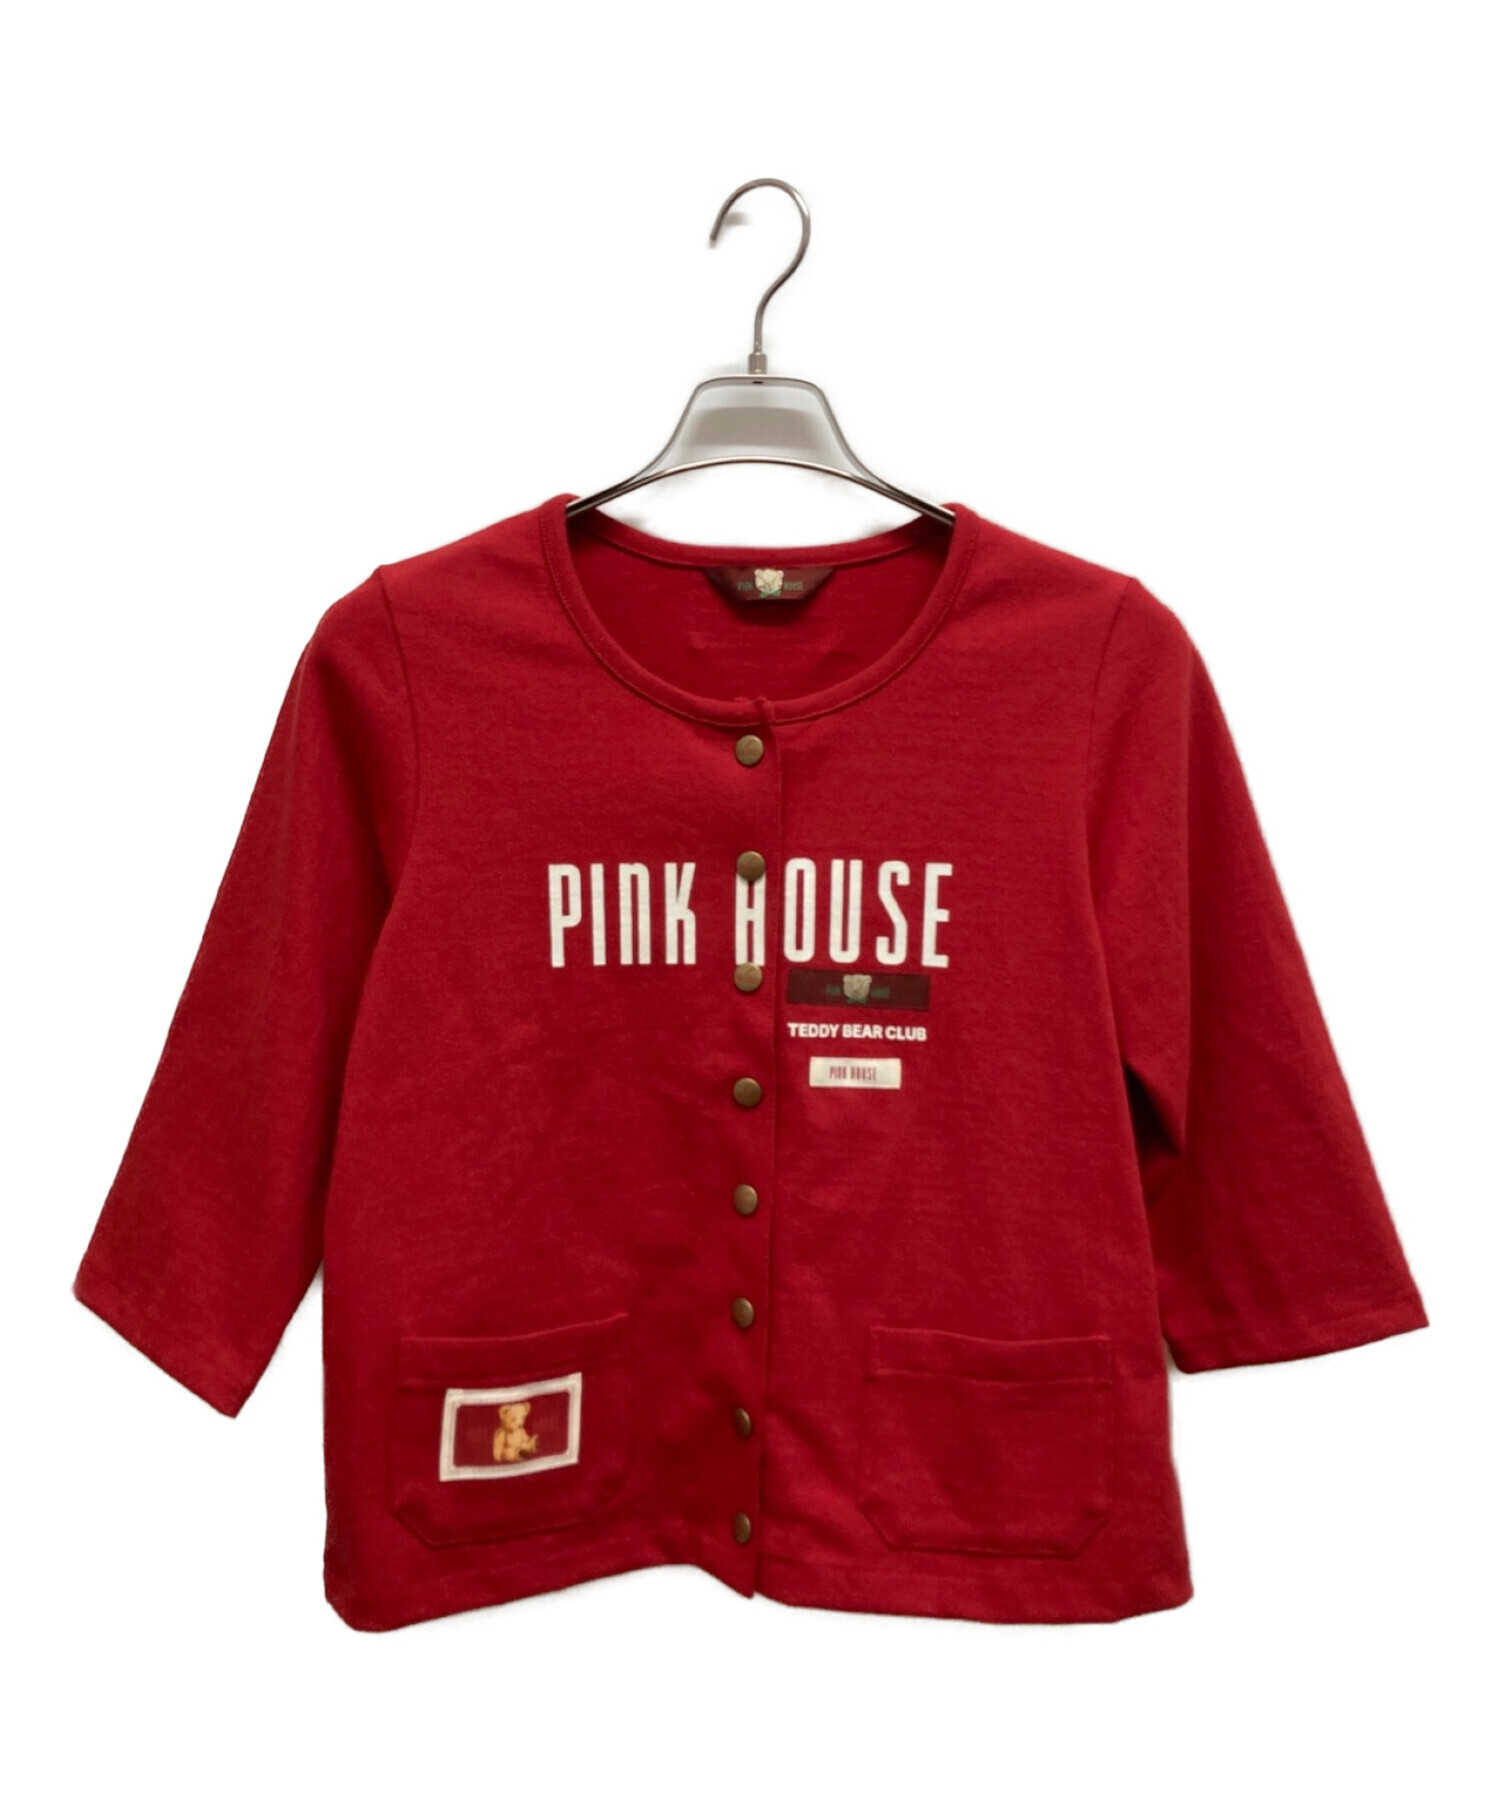 PINK HOUSE (ピンクハウス) ベアー刺繍スウェットカーディガン レッド サイズ:M